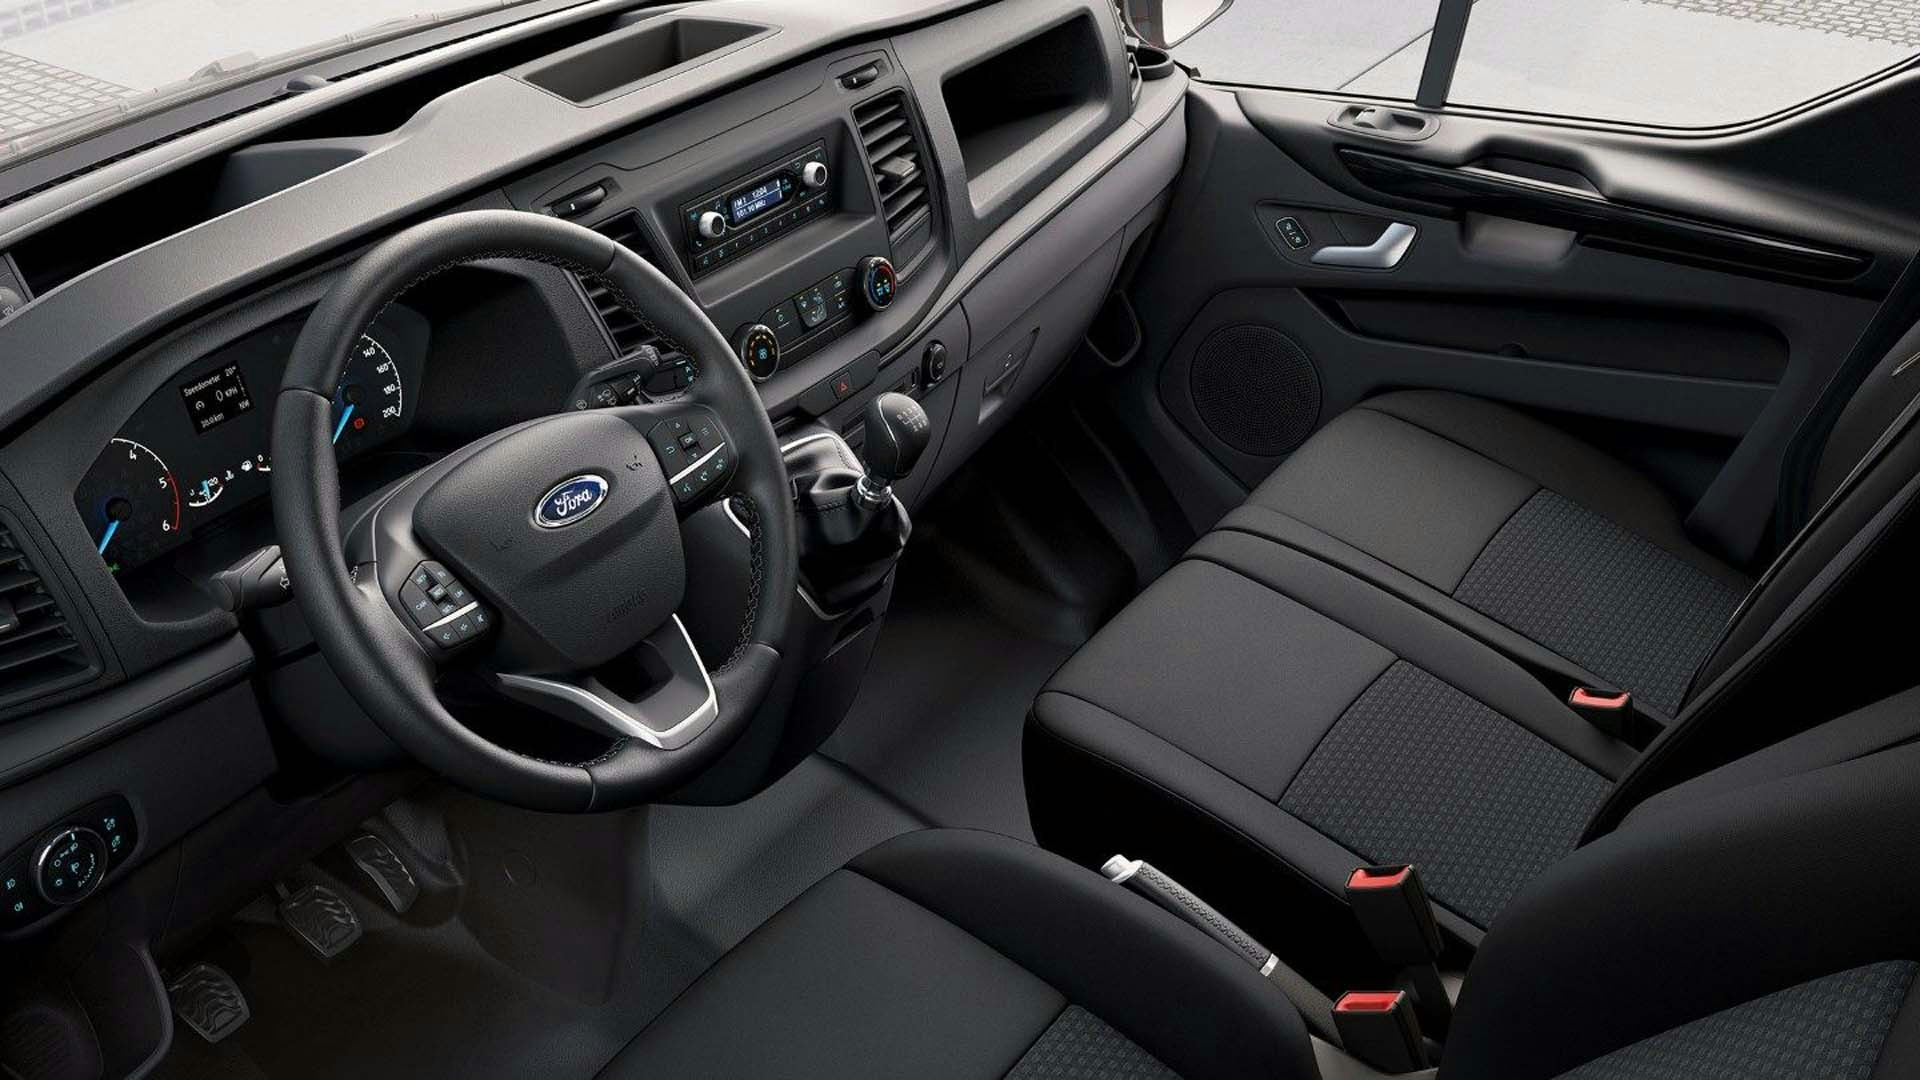 Ford Transit Custom interior